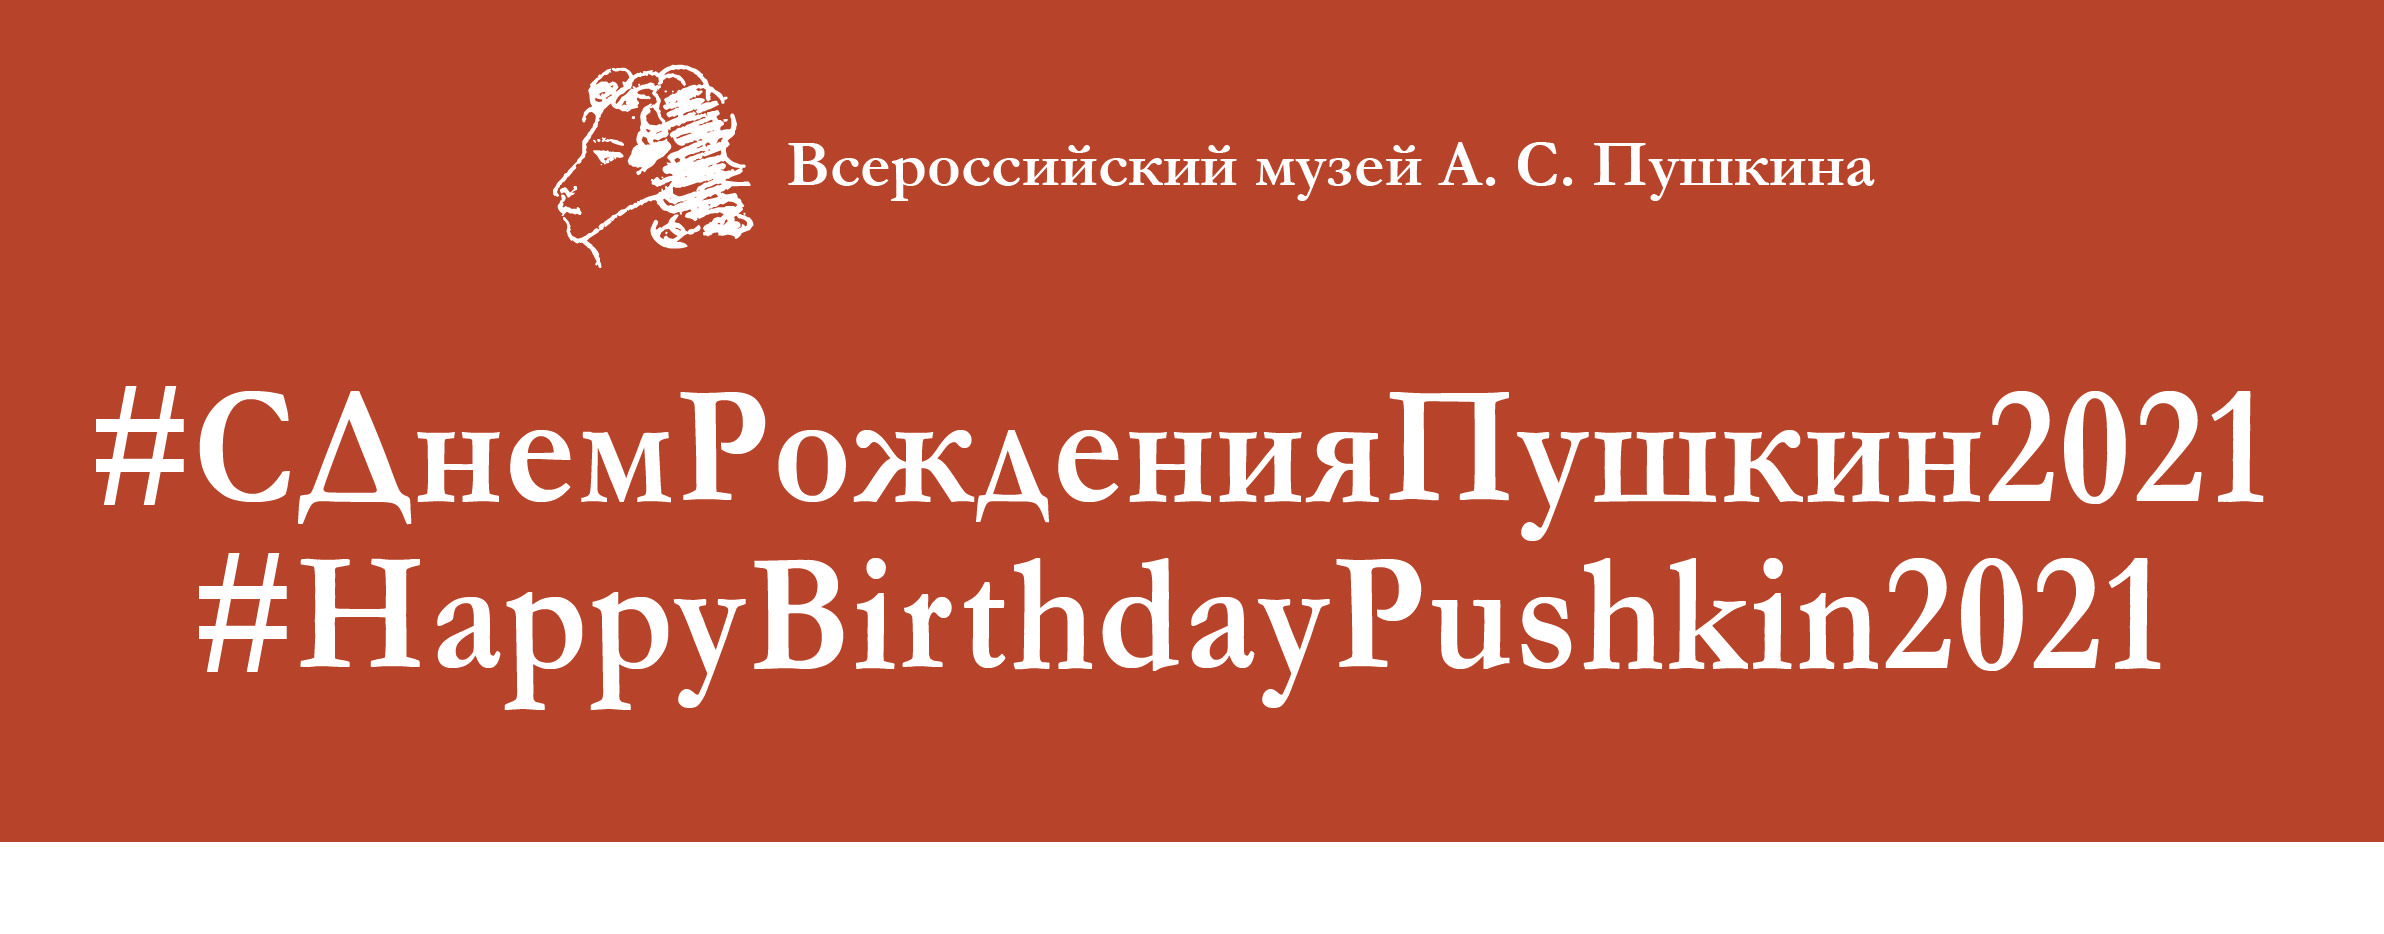 С днем рождения, Пушкин